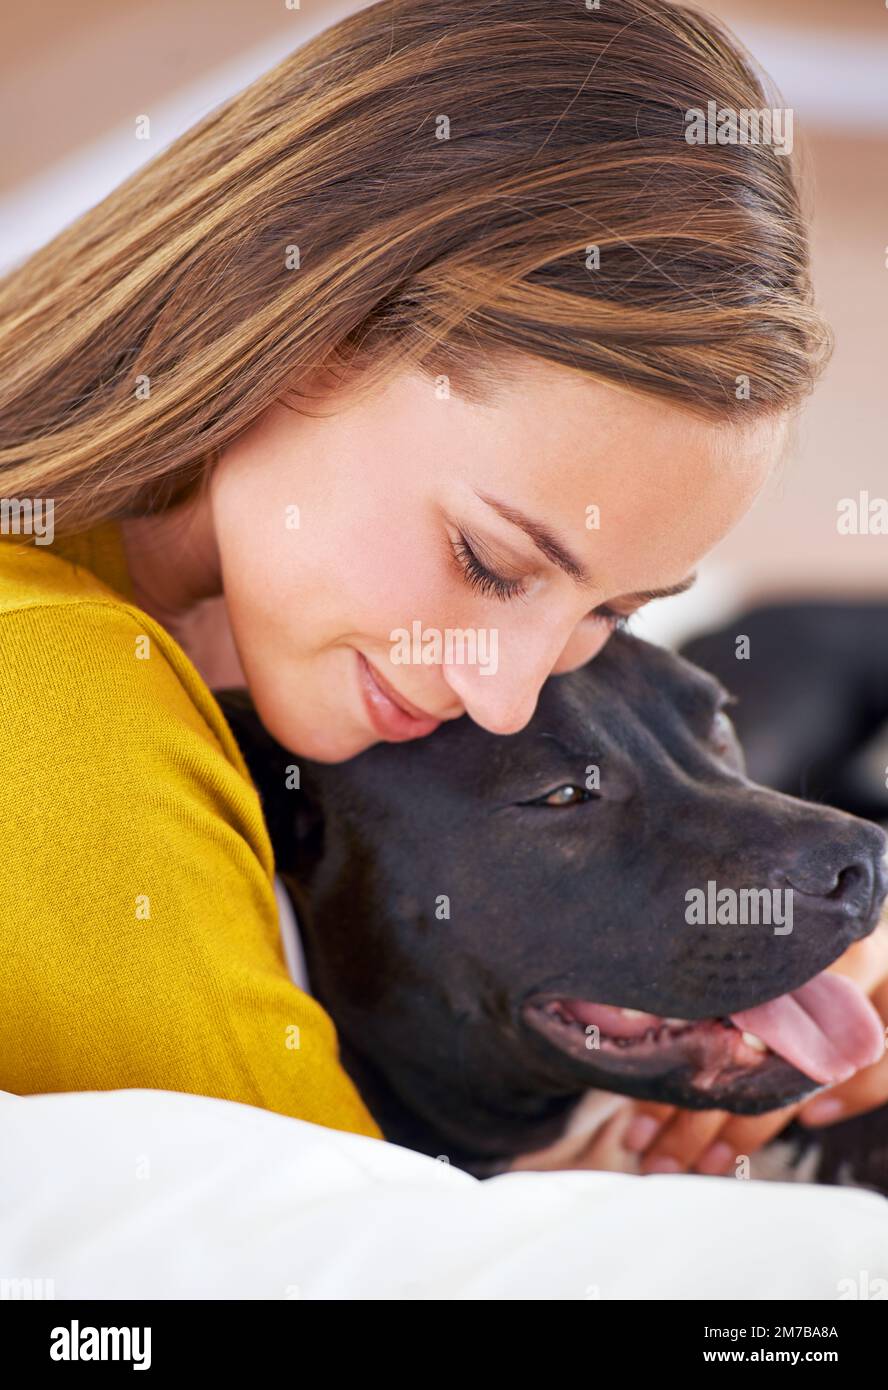 Er ist mein Lieblingstyp. Eine attraktive junge Frau, die mit ihrem Hund auf dem Sofa kuschelt. Stockfoto